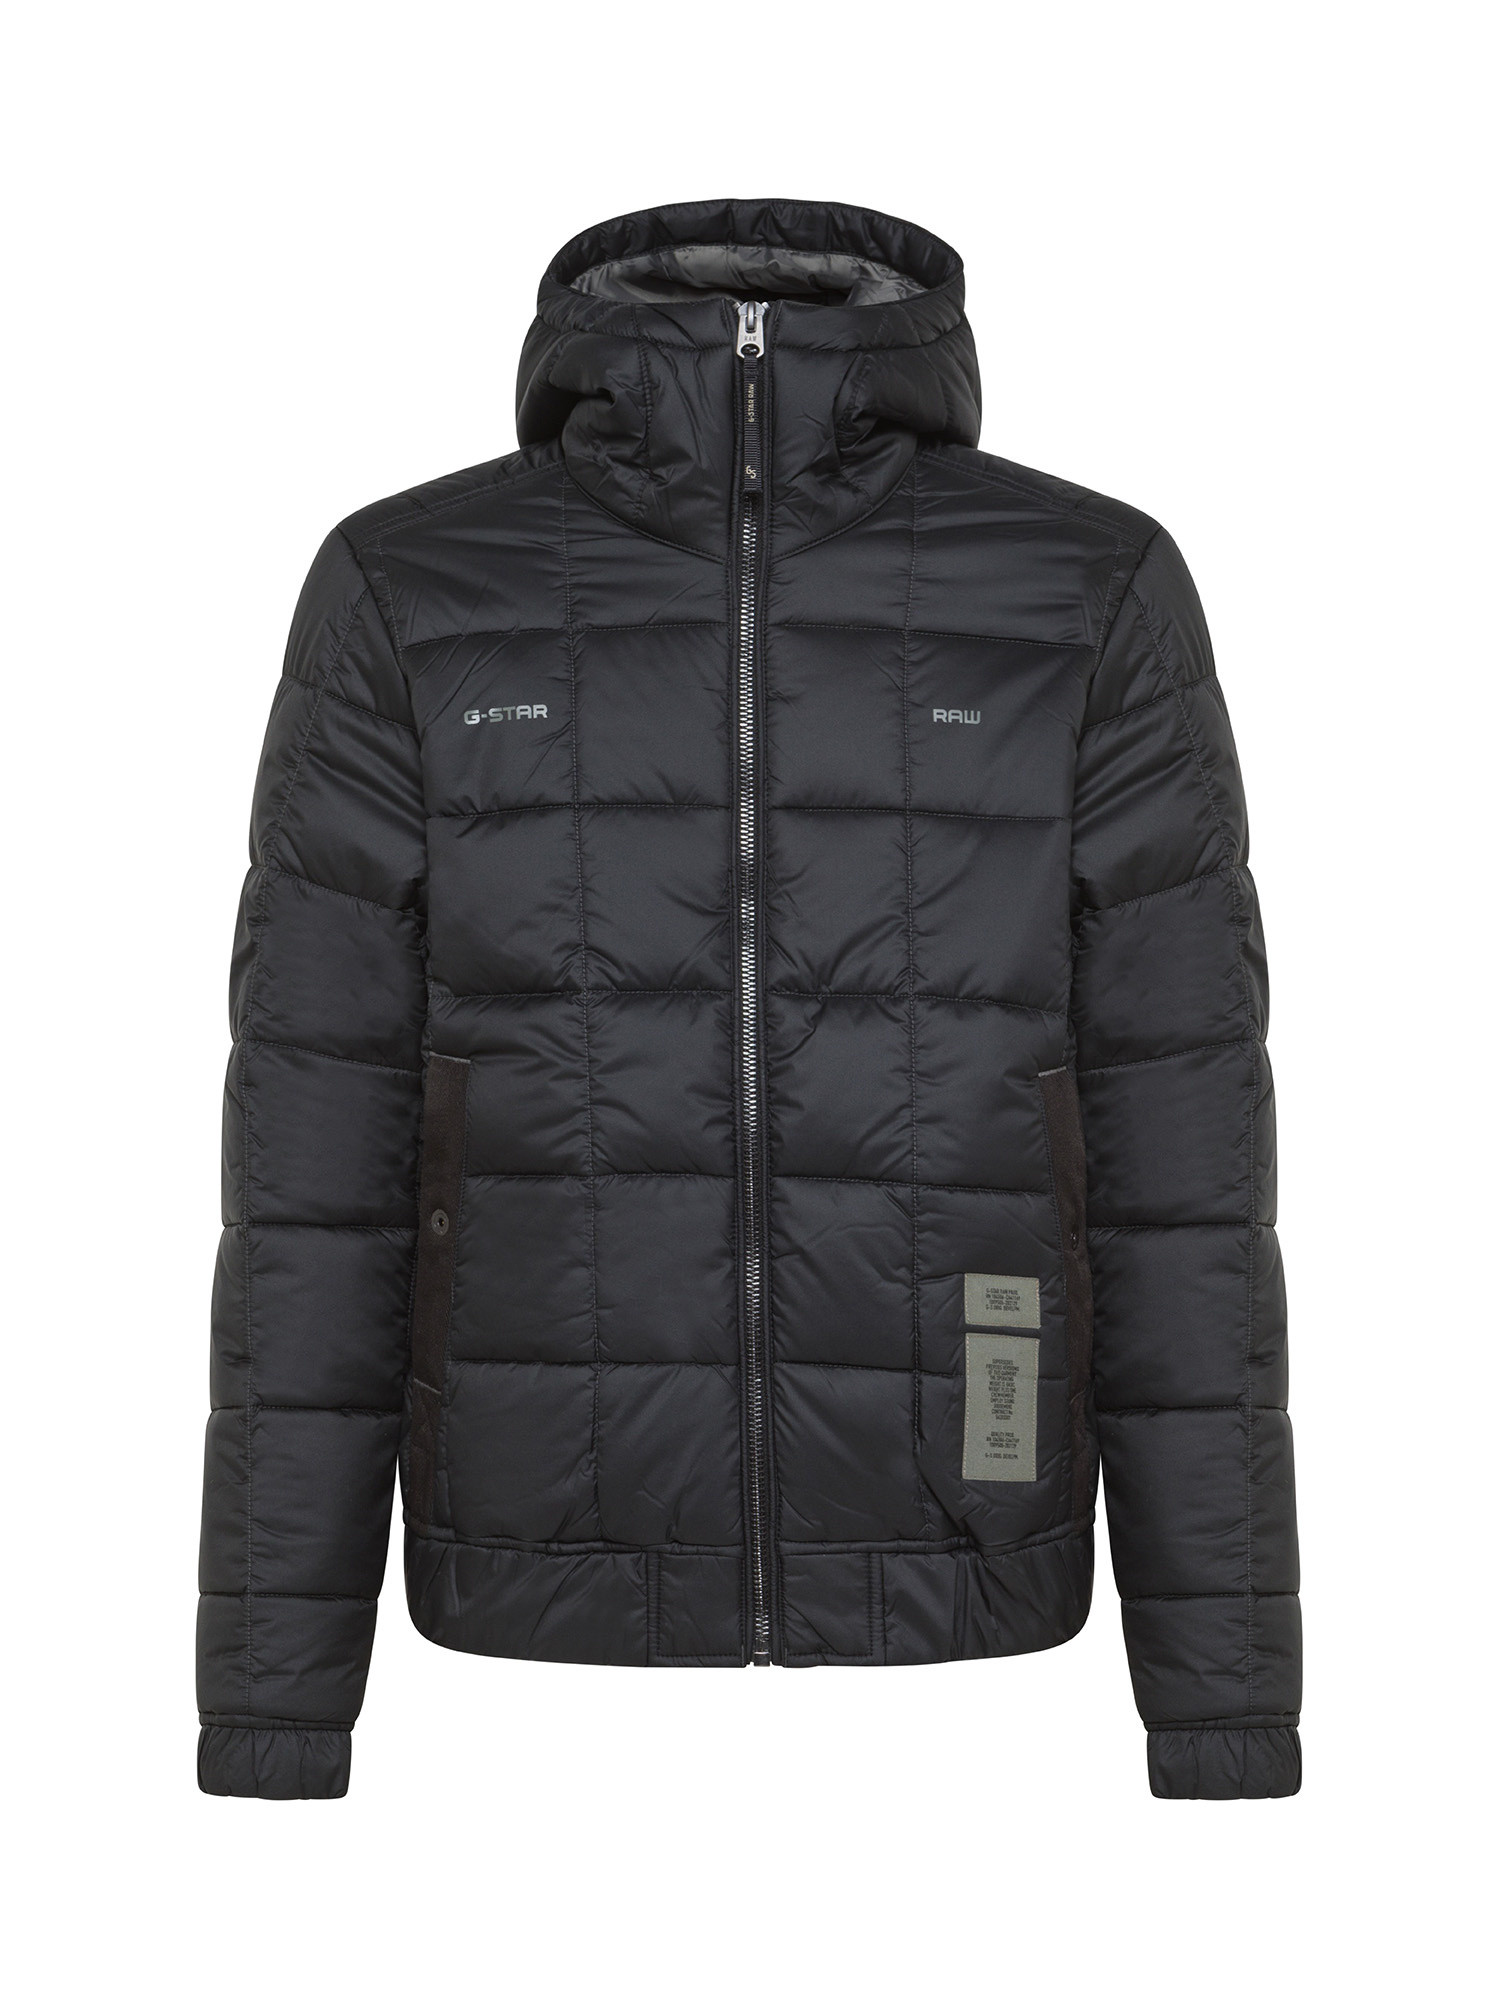 G-Star - Hooded down jacket, Black, large image number 0